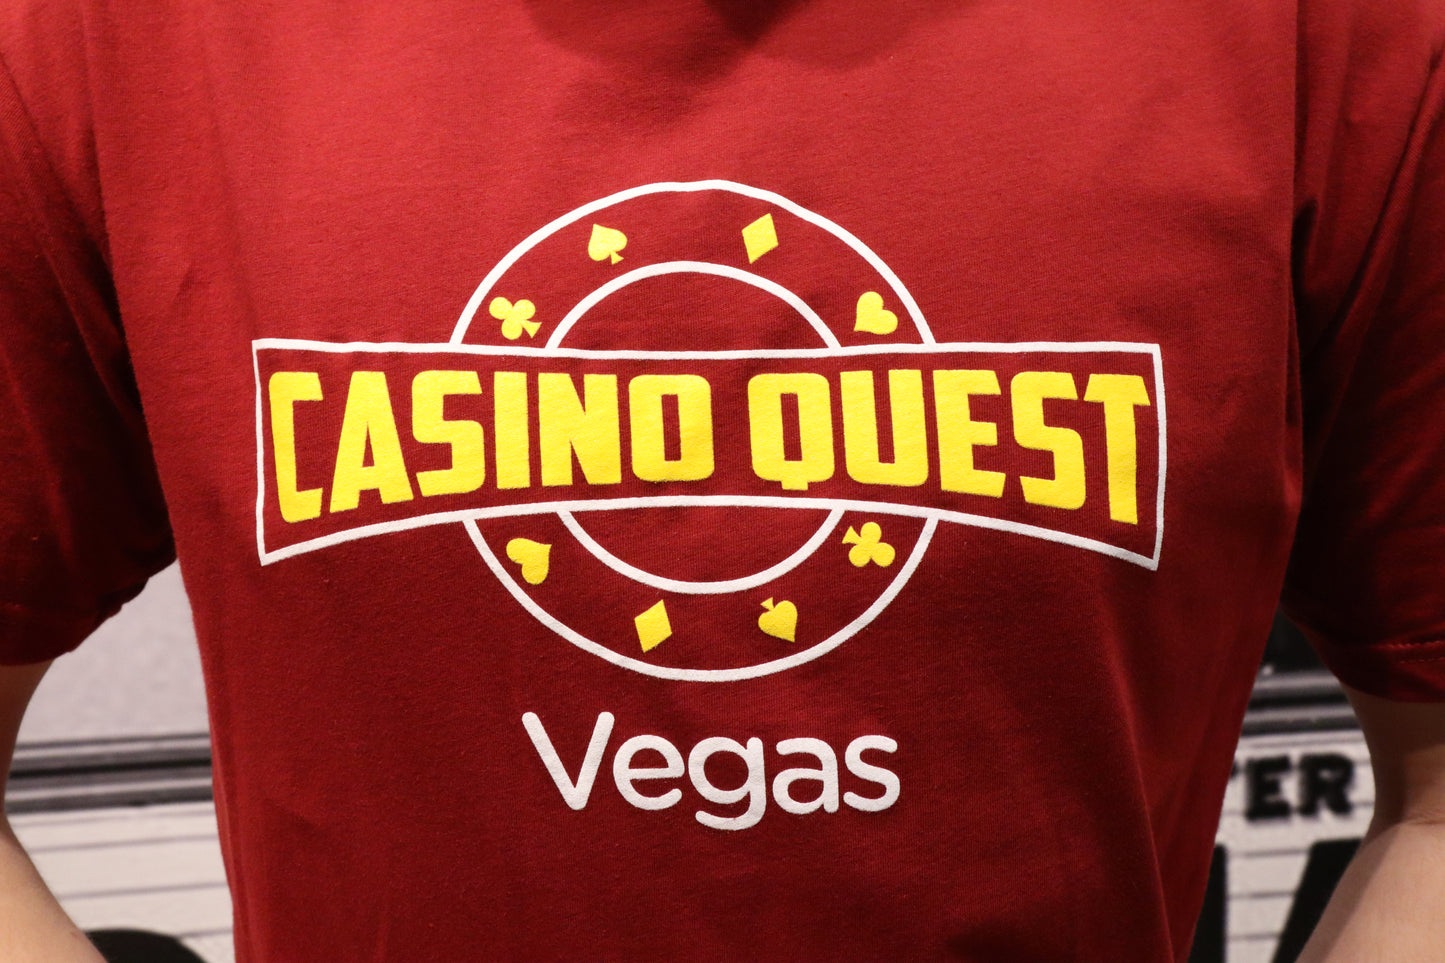 Cardinal Red Casino Quest T-Shirt